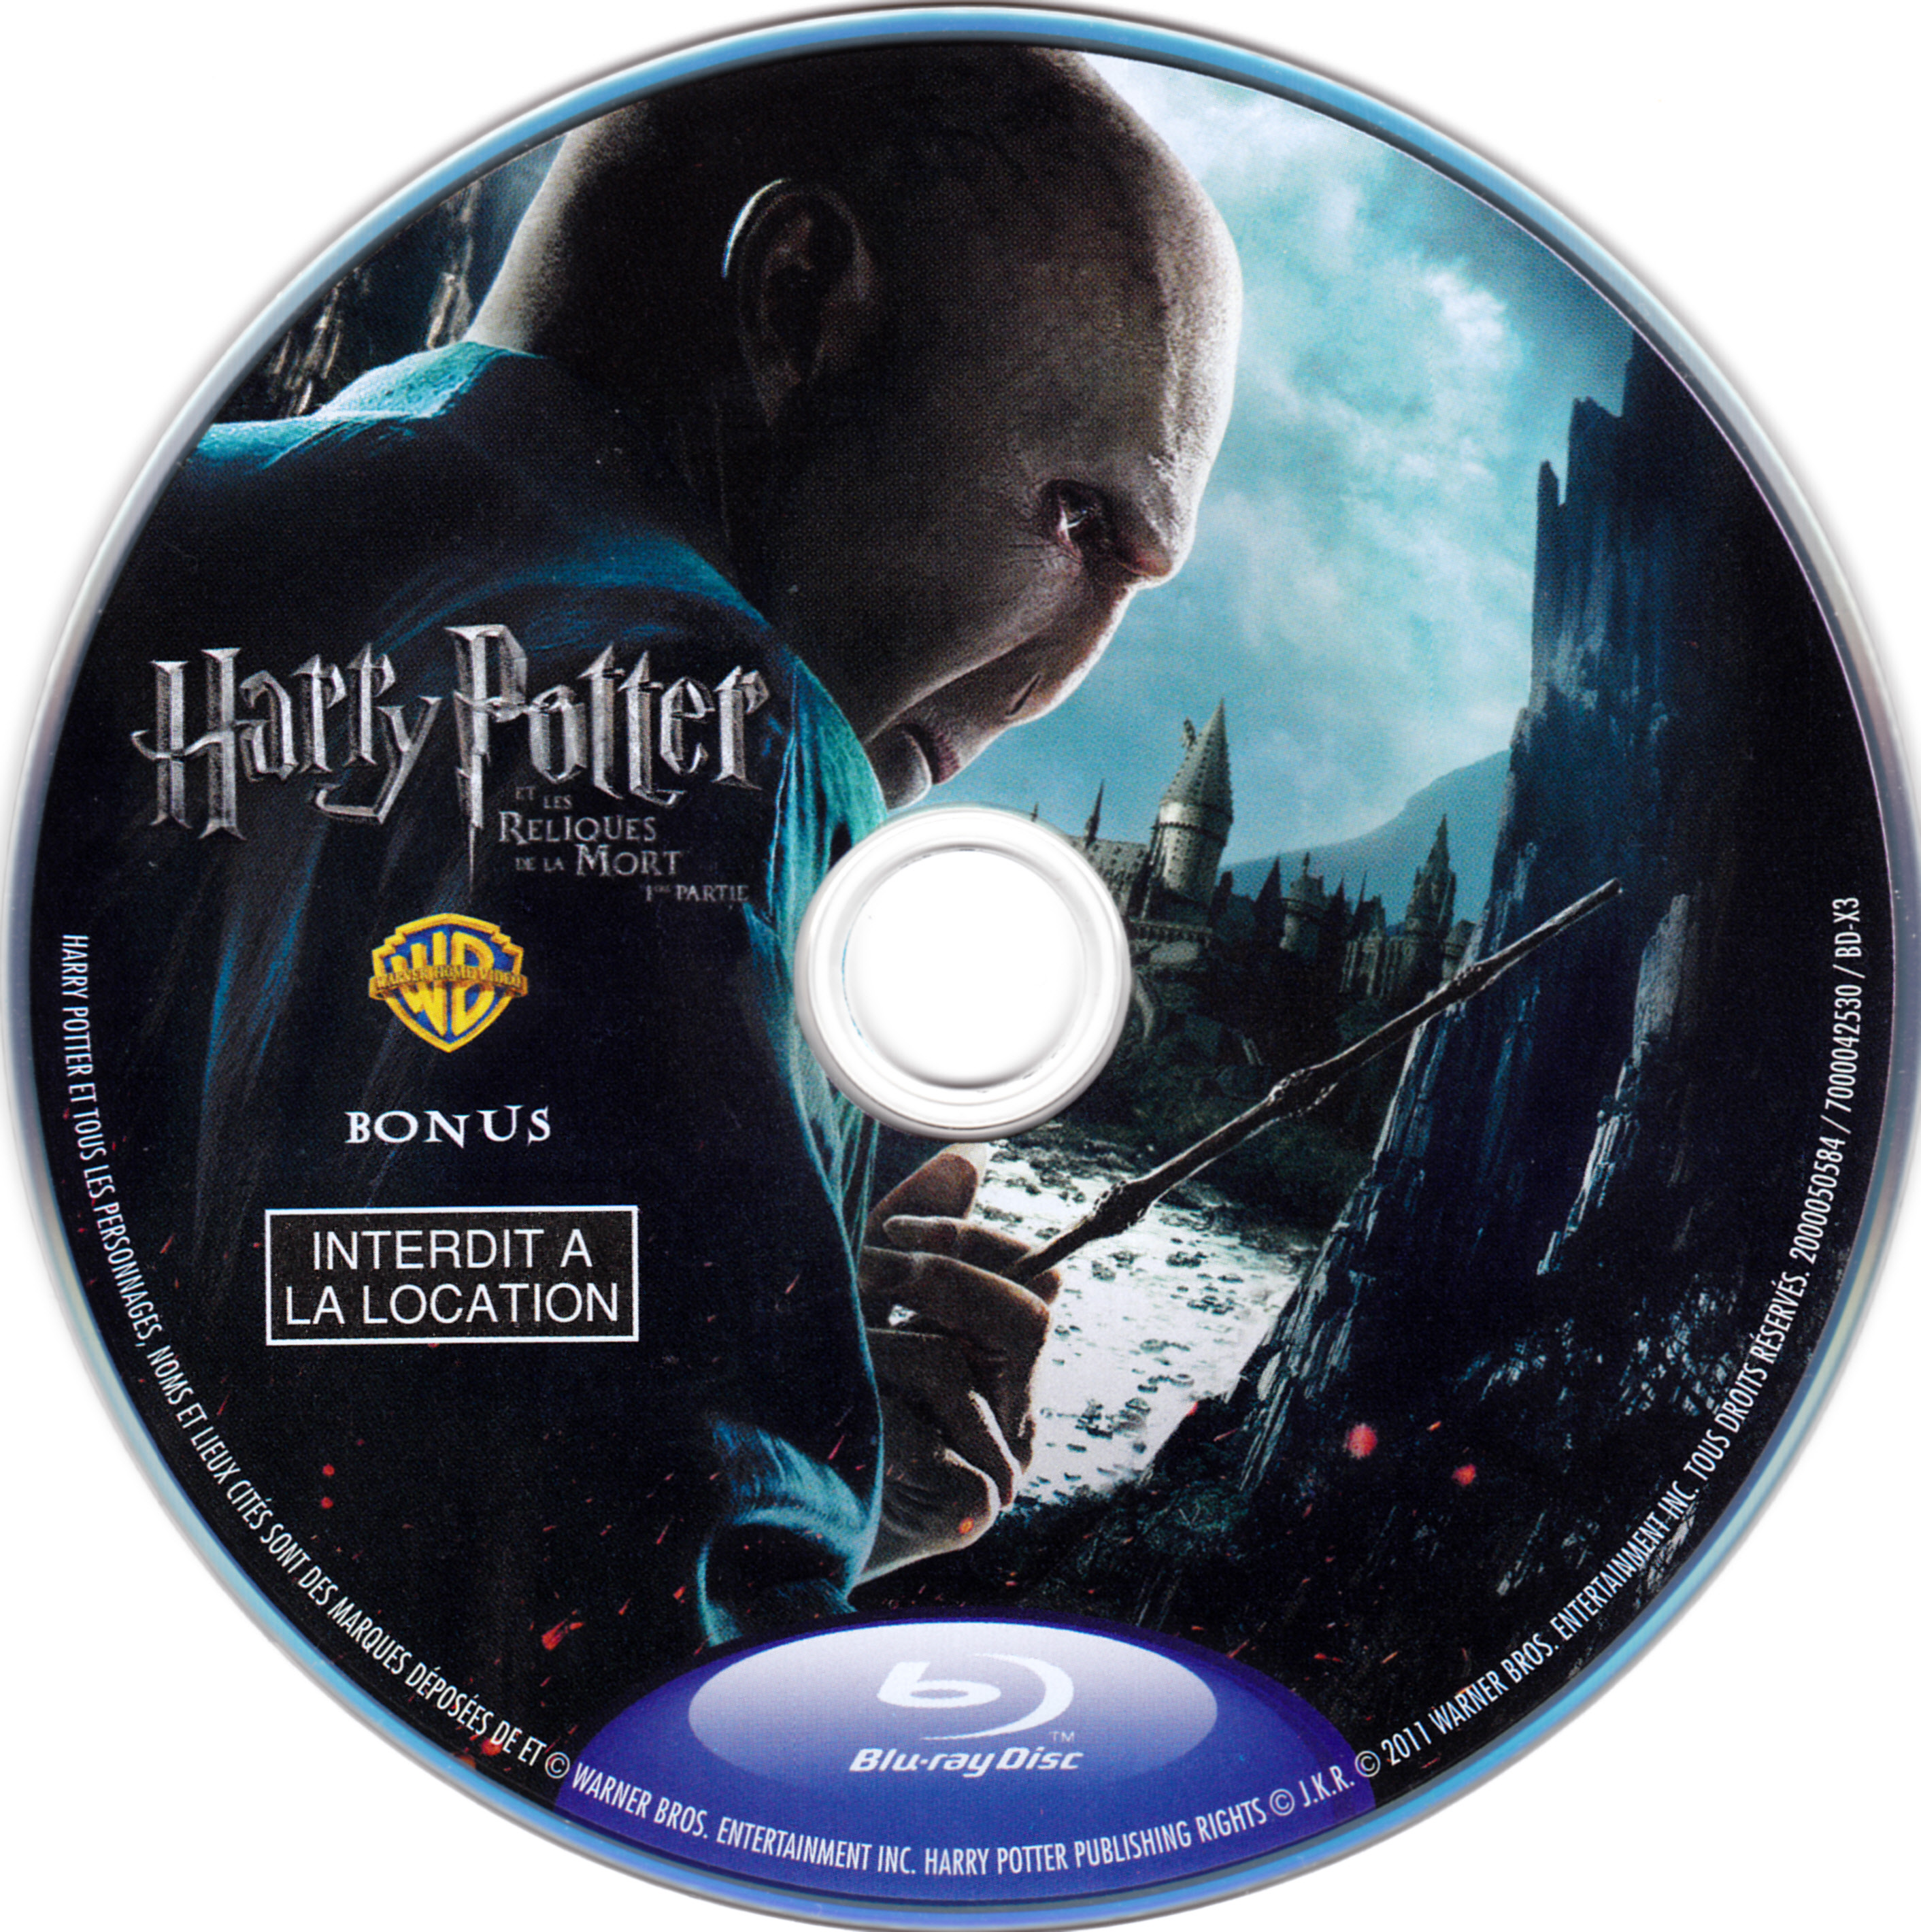 Harry Potter et les reliques de la mort - 1re partie (BONUS) (BLU-RAY)